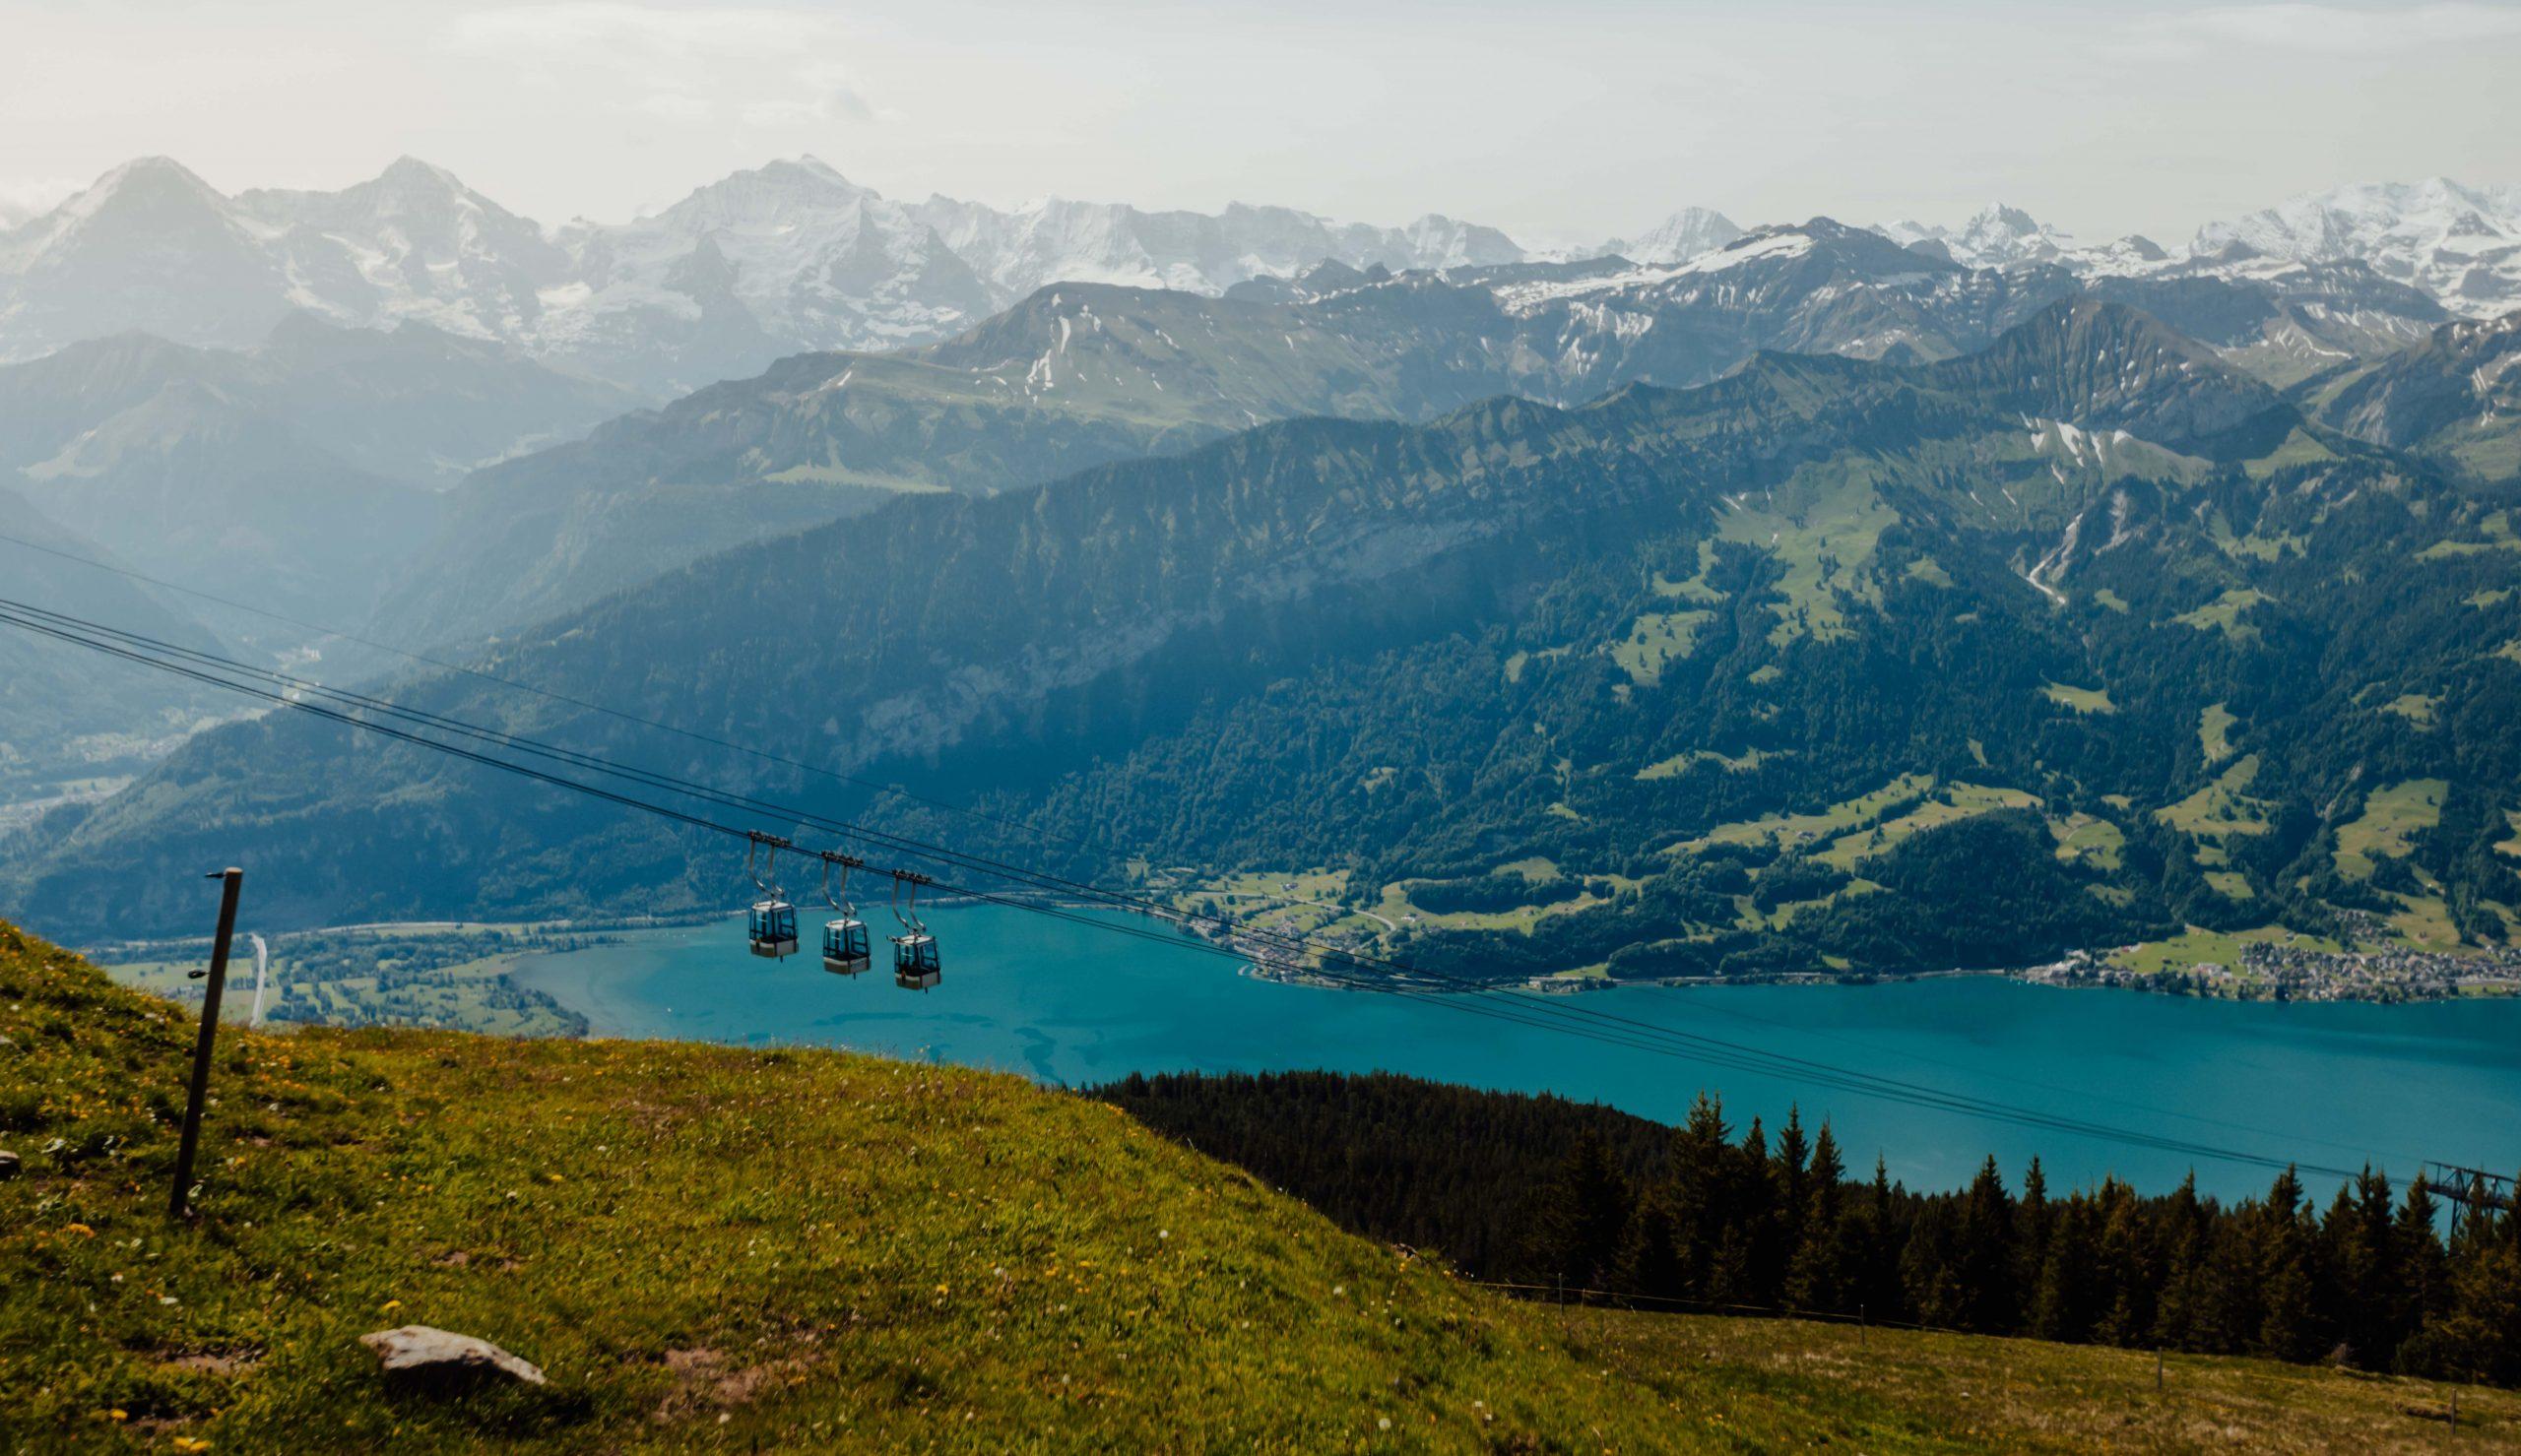 Vacances en Suisse - Six plateformes pour faciliter la vie des campeurs